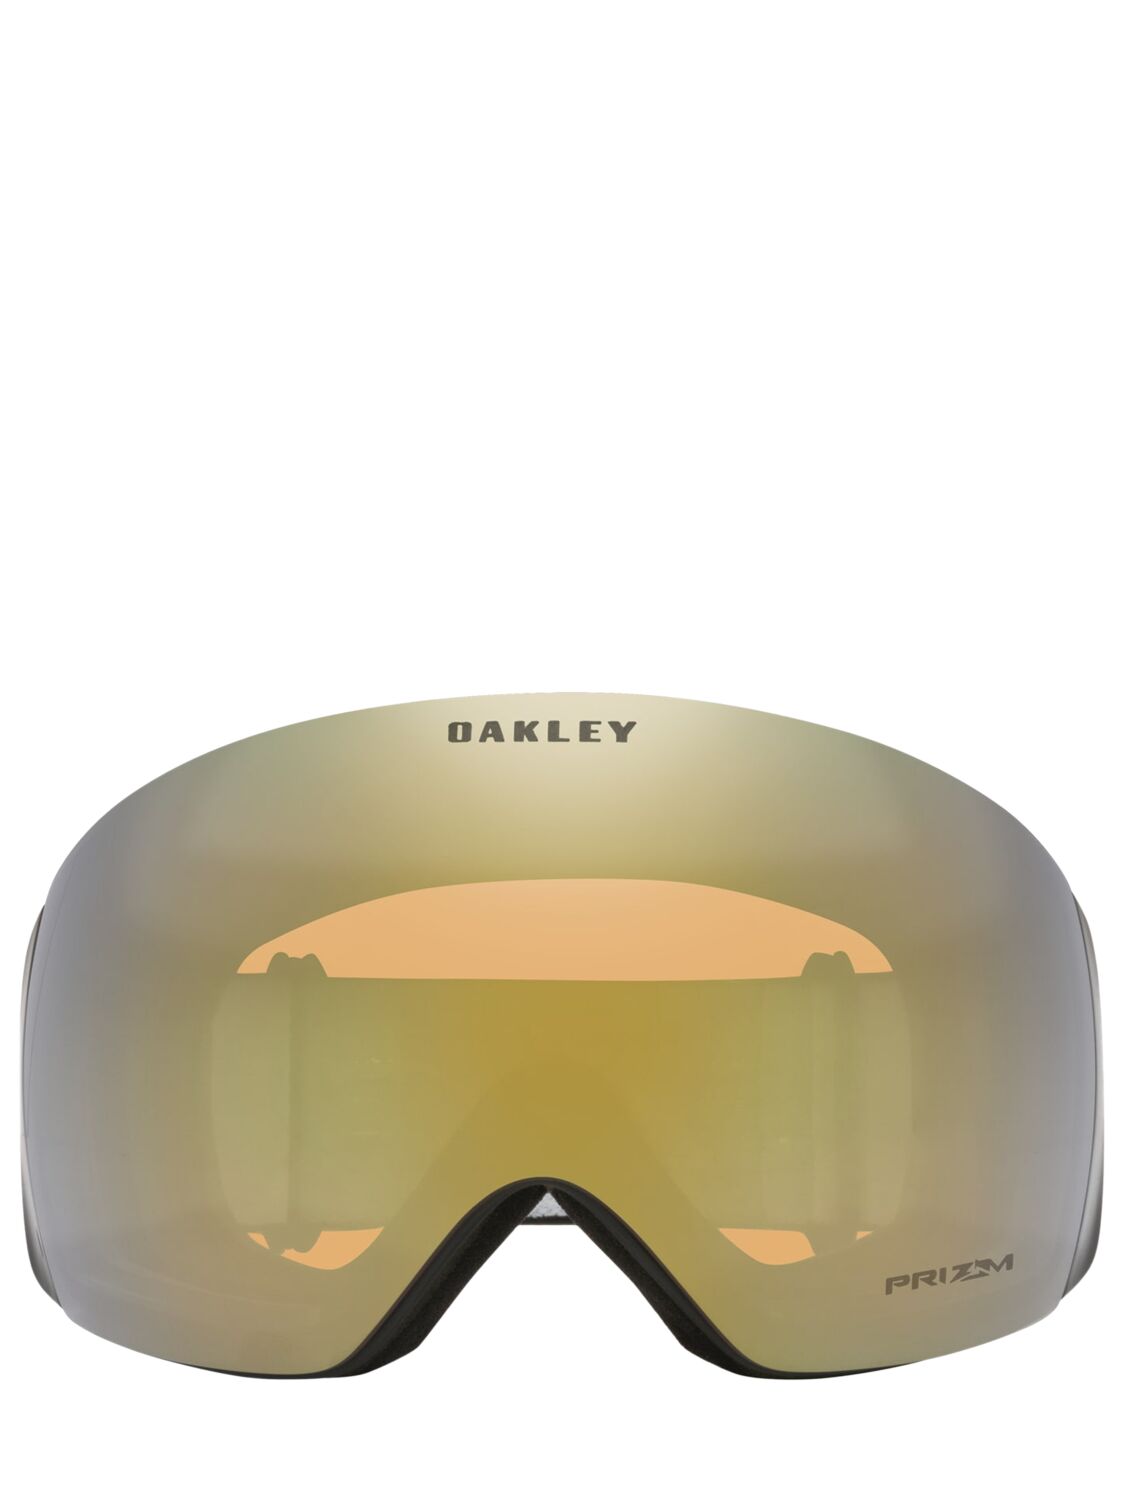 Oakley Flight Deck L Factory Pilot Goggles